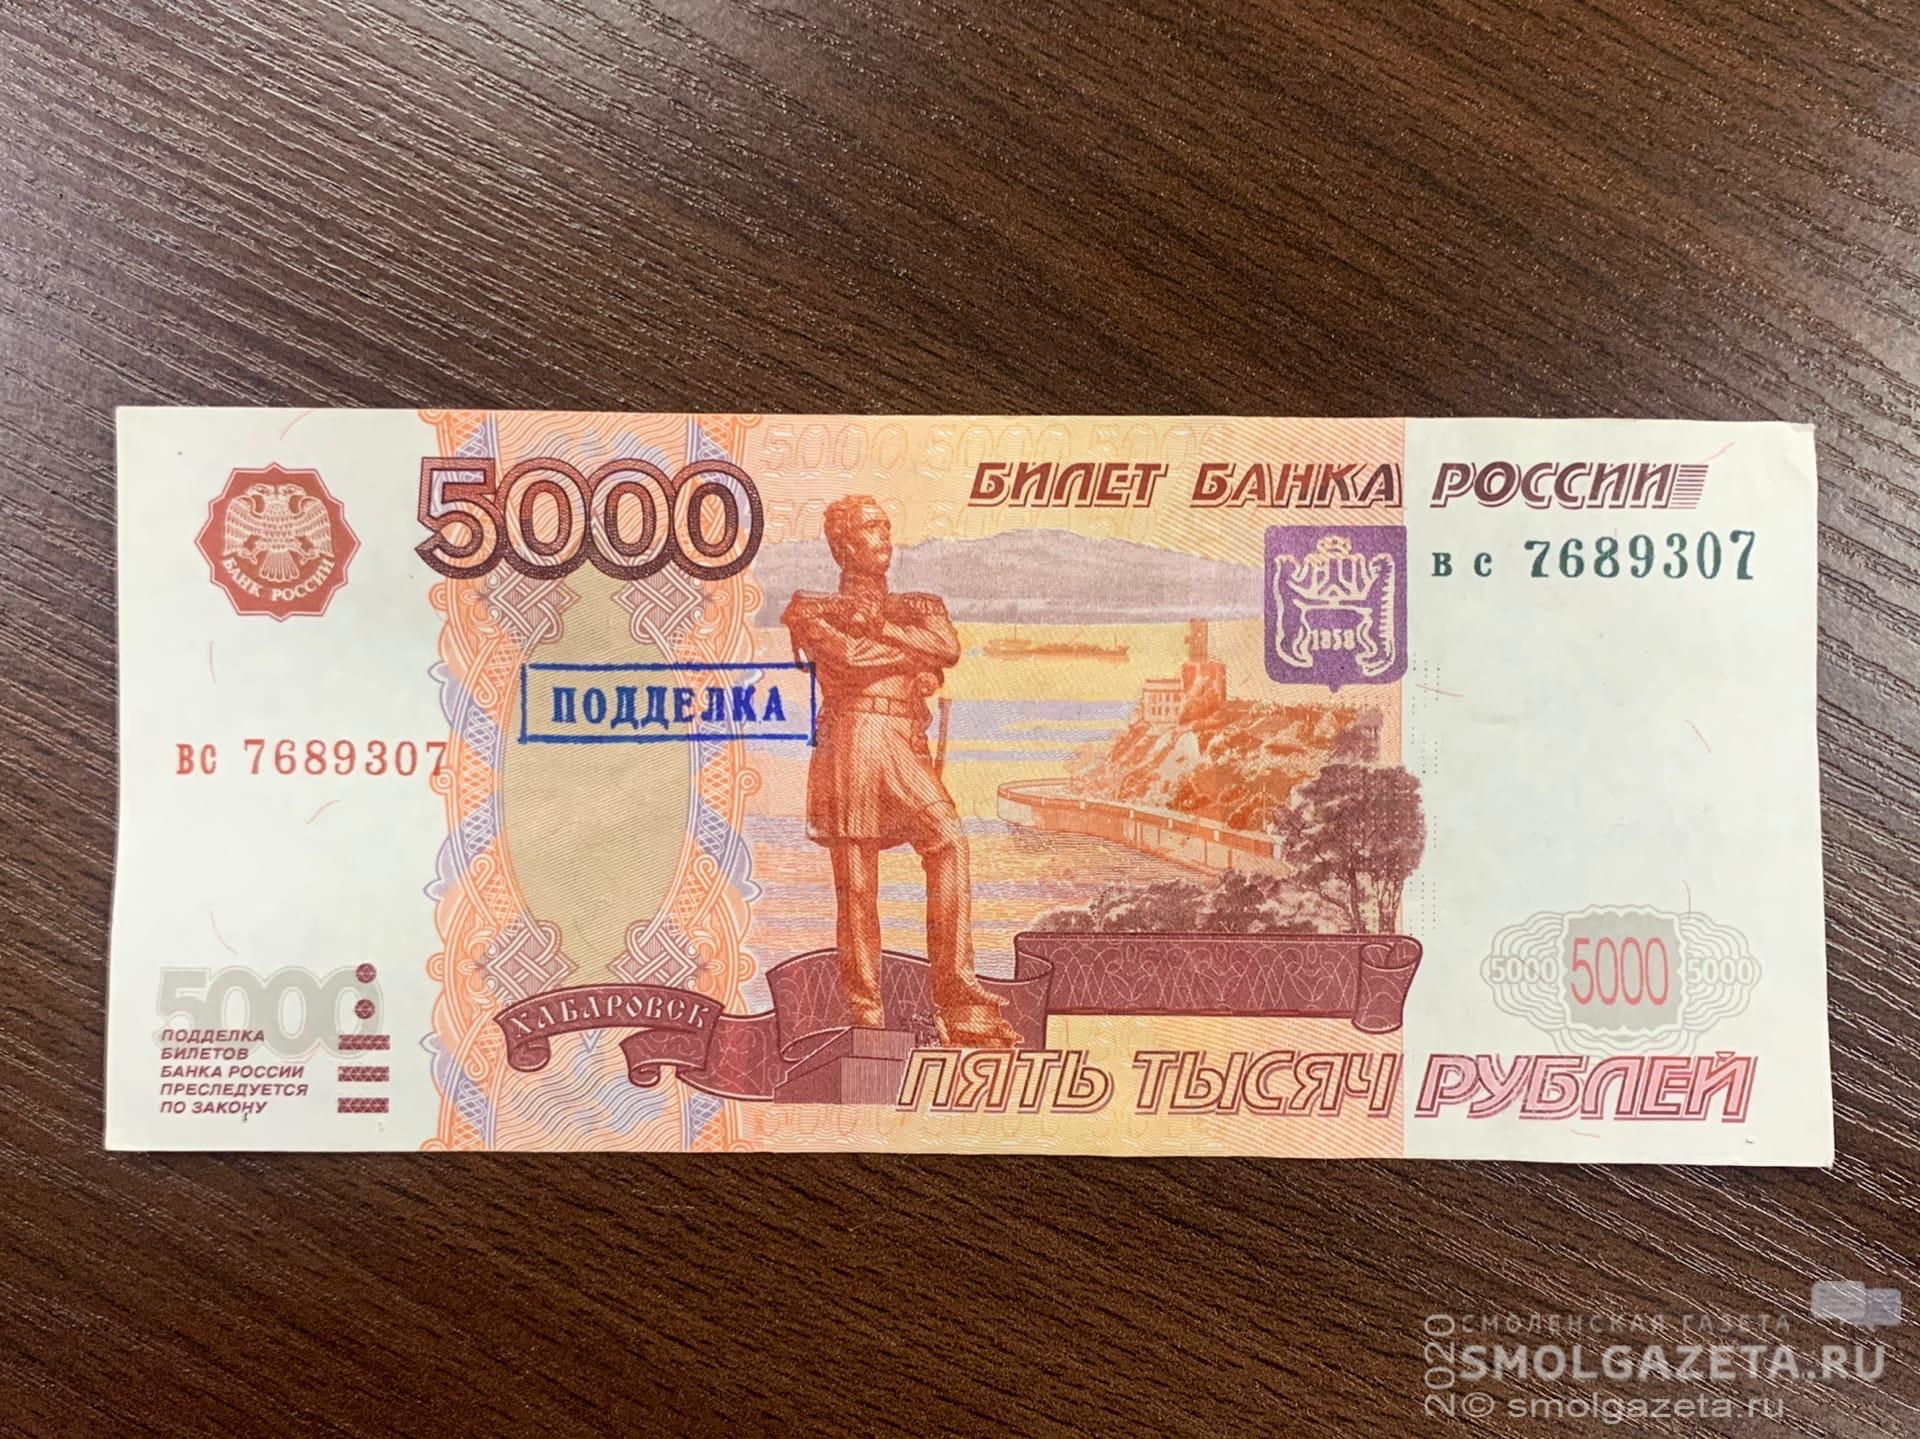 Жителя Вяземского района подозревают в сбыте фальшивых денег